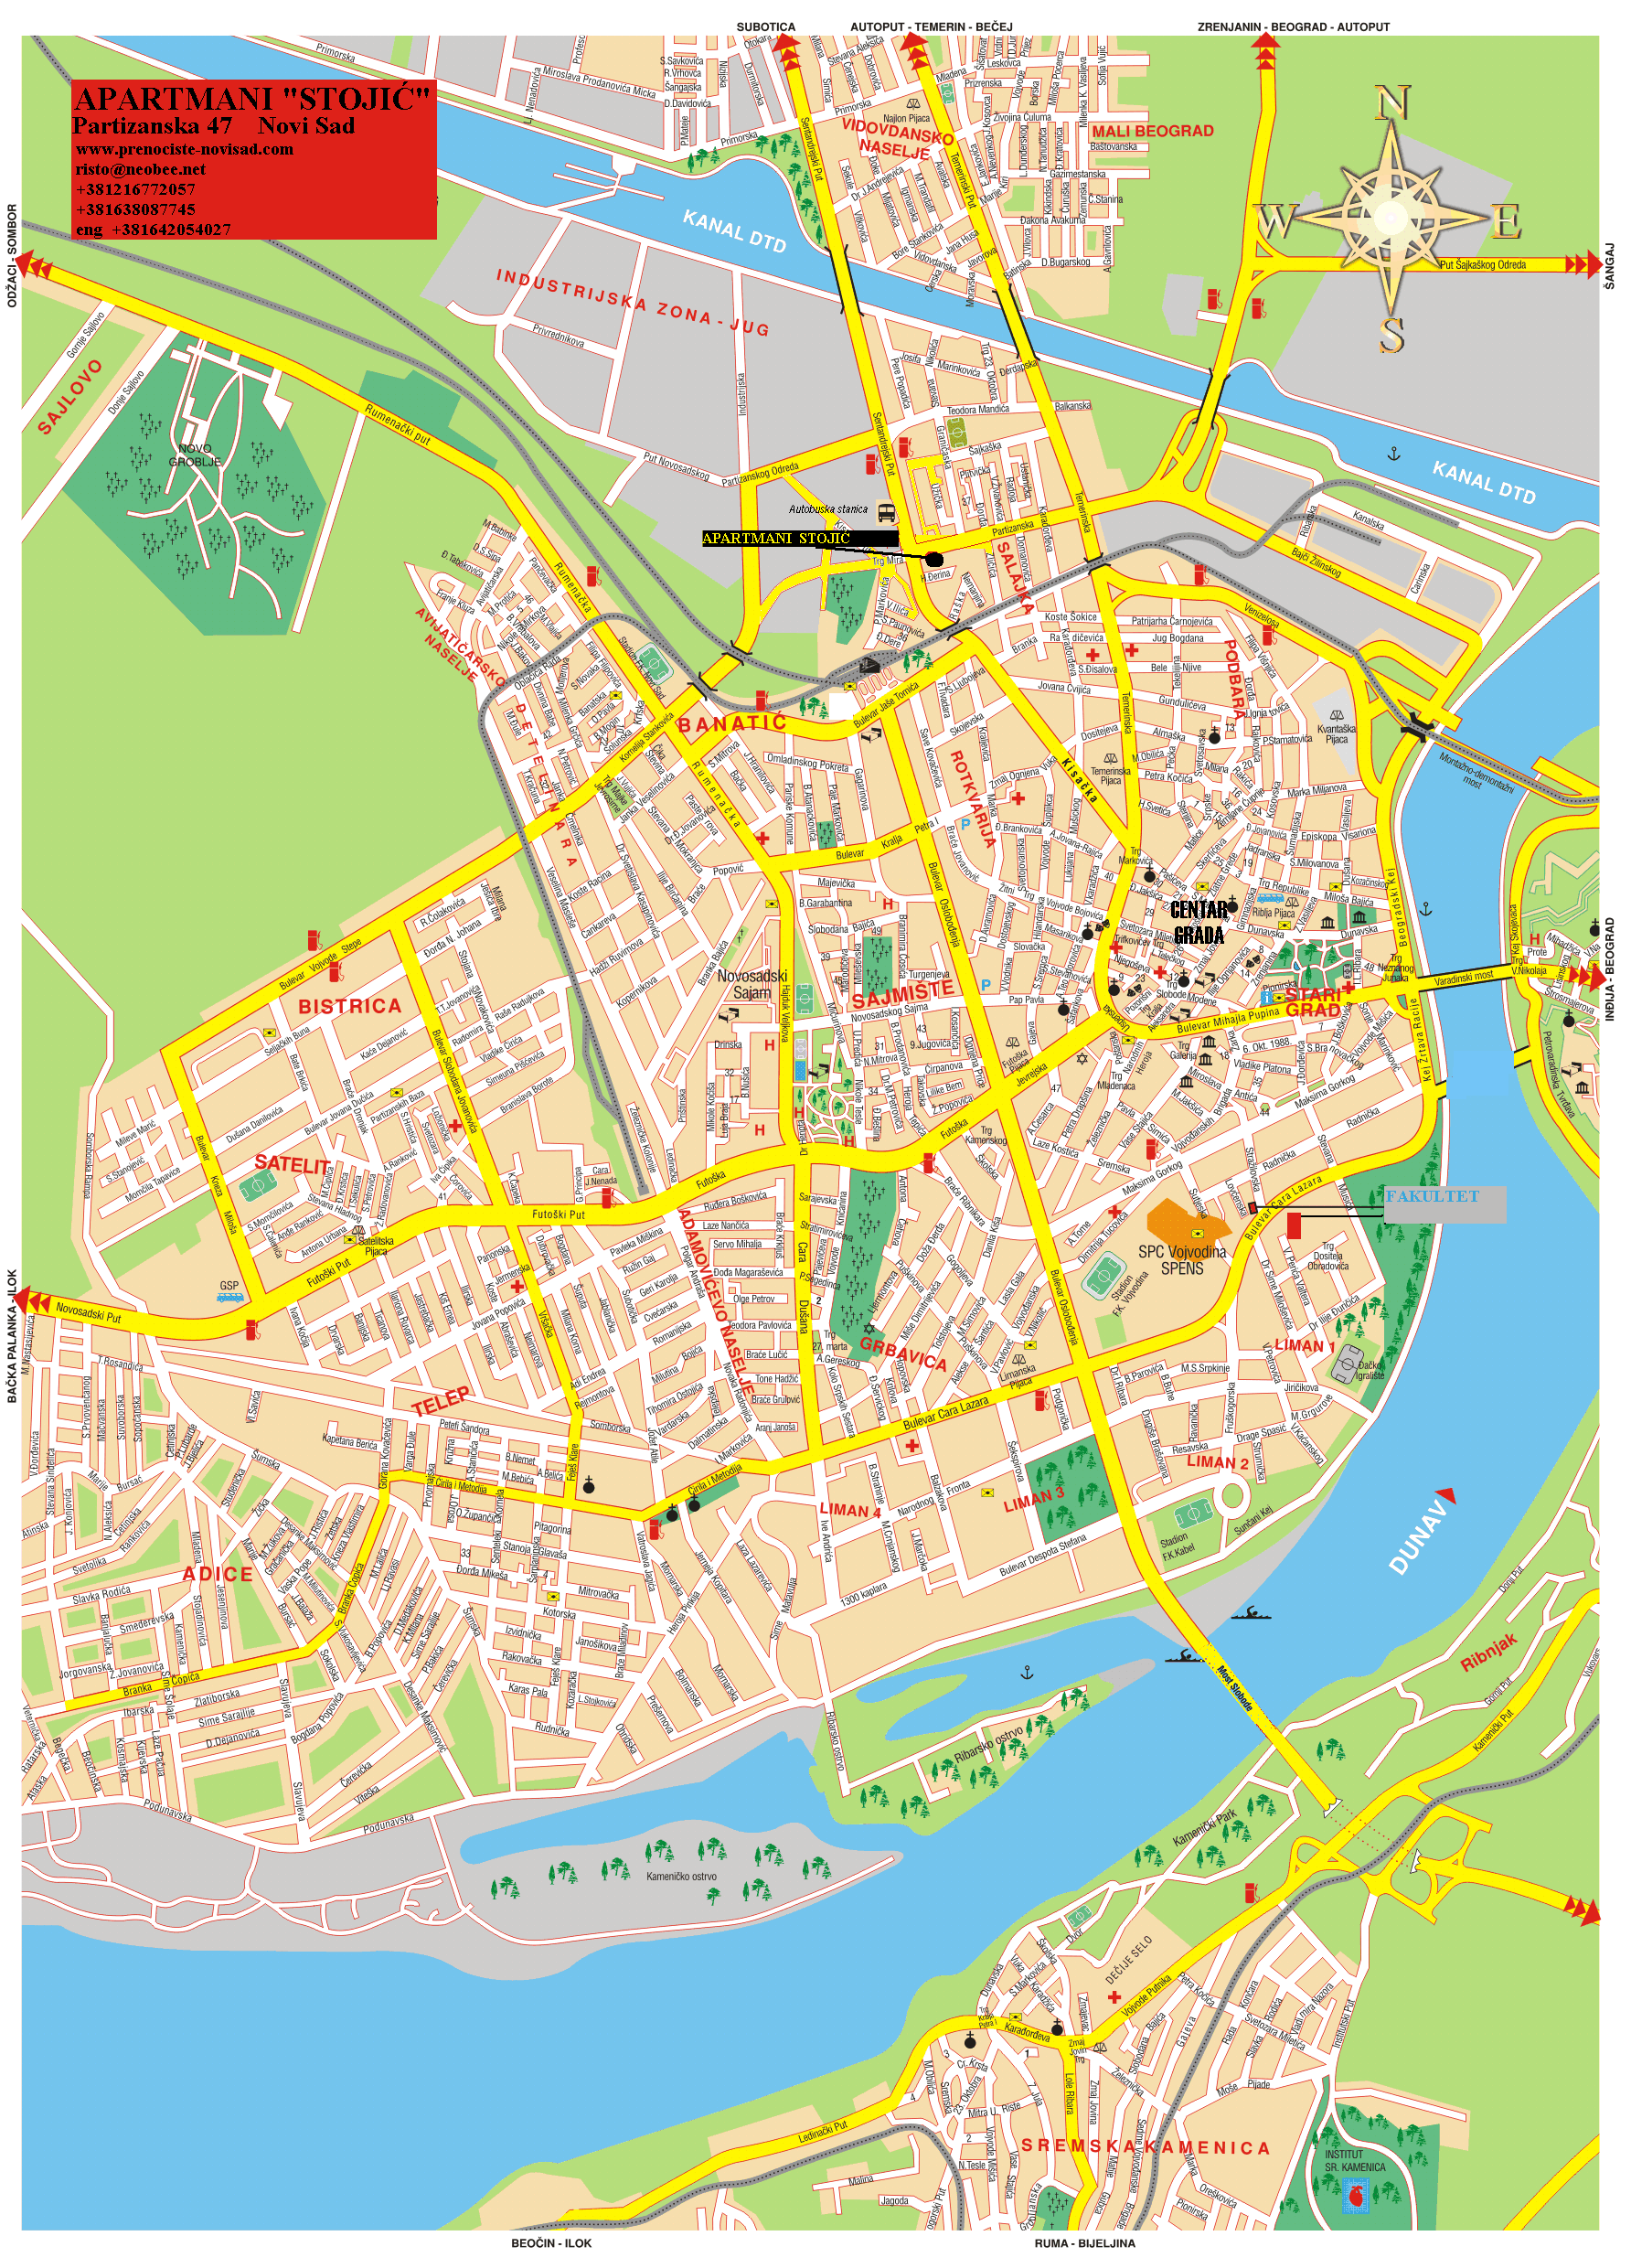 novi sad mapa grada Sajlovo novi sad mapa grada